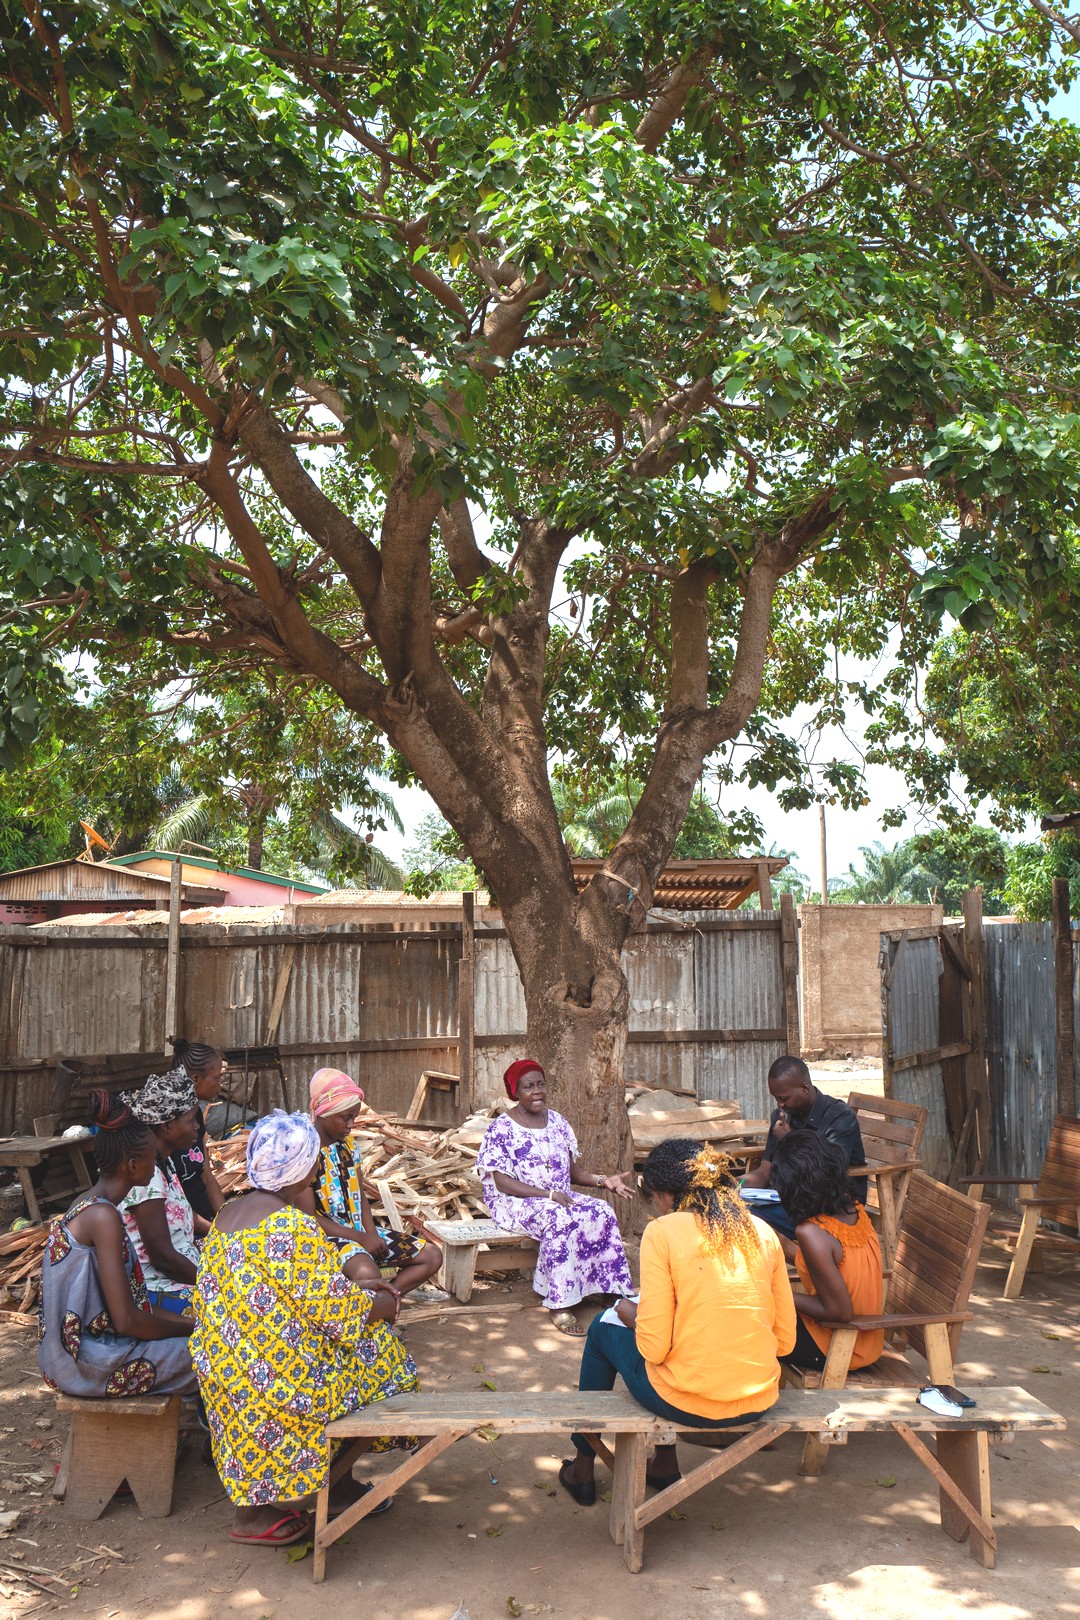 Les femmes répondent à une enquête d'audience organisée lors d'un Focus Group de Radio Ndeke Luka (RNL), la principale radio de Centrafrique, à Bangui en mars 2021. Donner la parole à la population est une priorité pour RNL depuis sa création en 2000, dans un pays ravagé par la crise. © Gwenn Dubourthoumieu / Fondation Hirondelle / Mars 2021